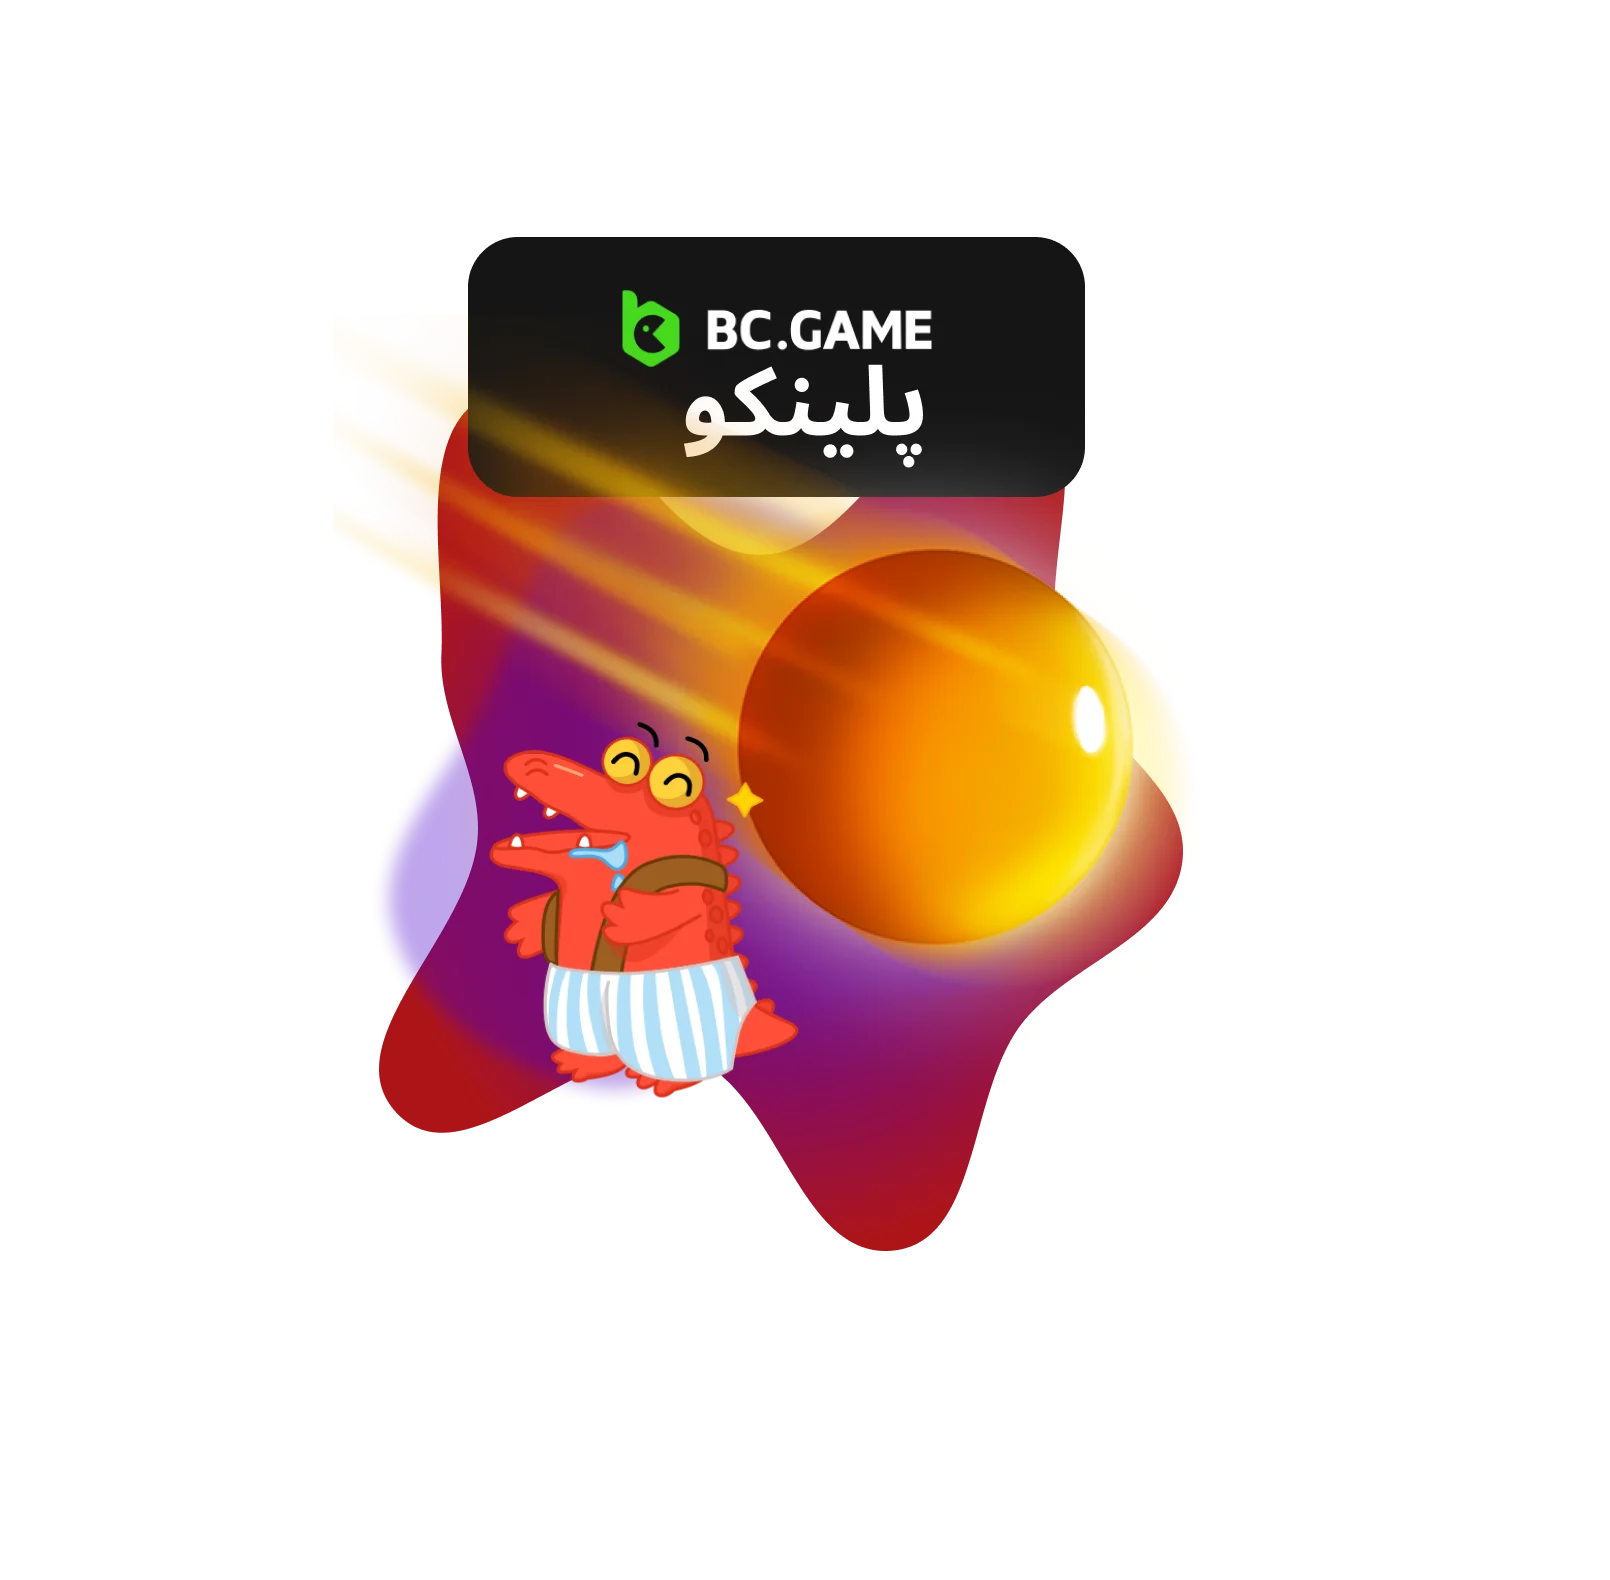 بنر بازی پلینکو BC.Game برای ایران، با نمایش رنگ‌های زنده و تخته پلینکو با توپ‌های در حال سقوط، منعکس‌کننده هیجان و سرگرمی.